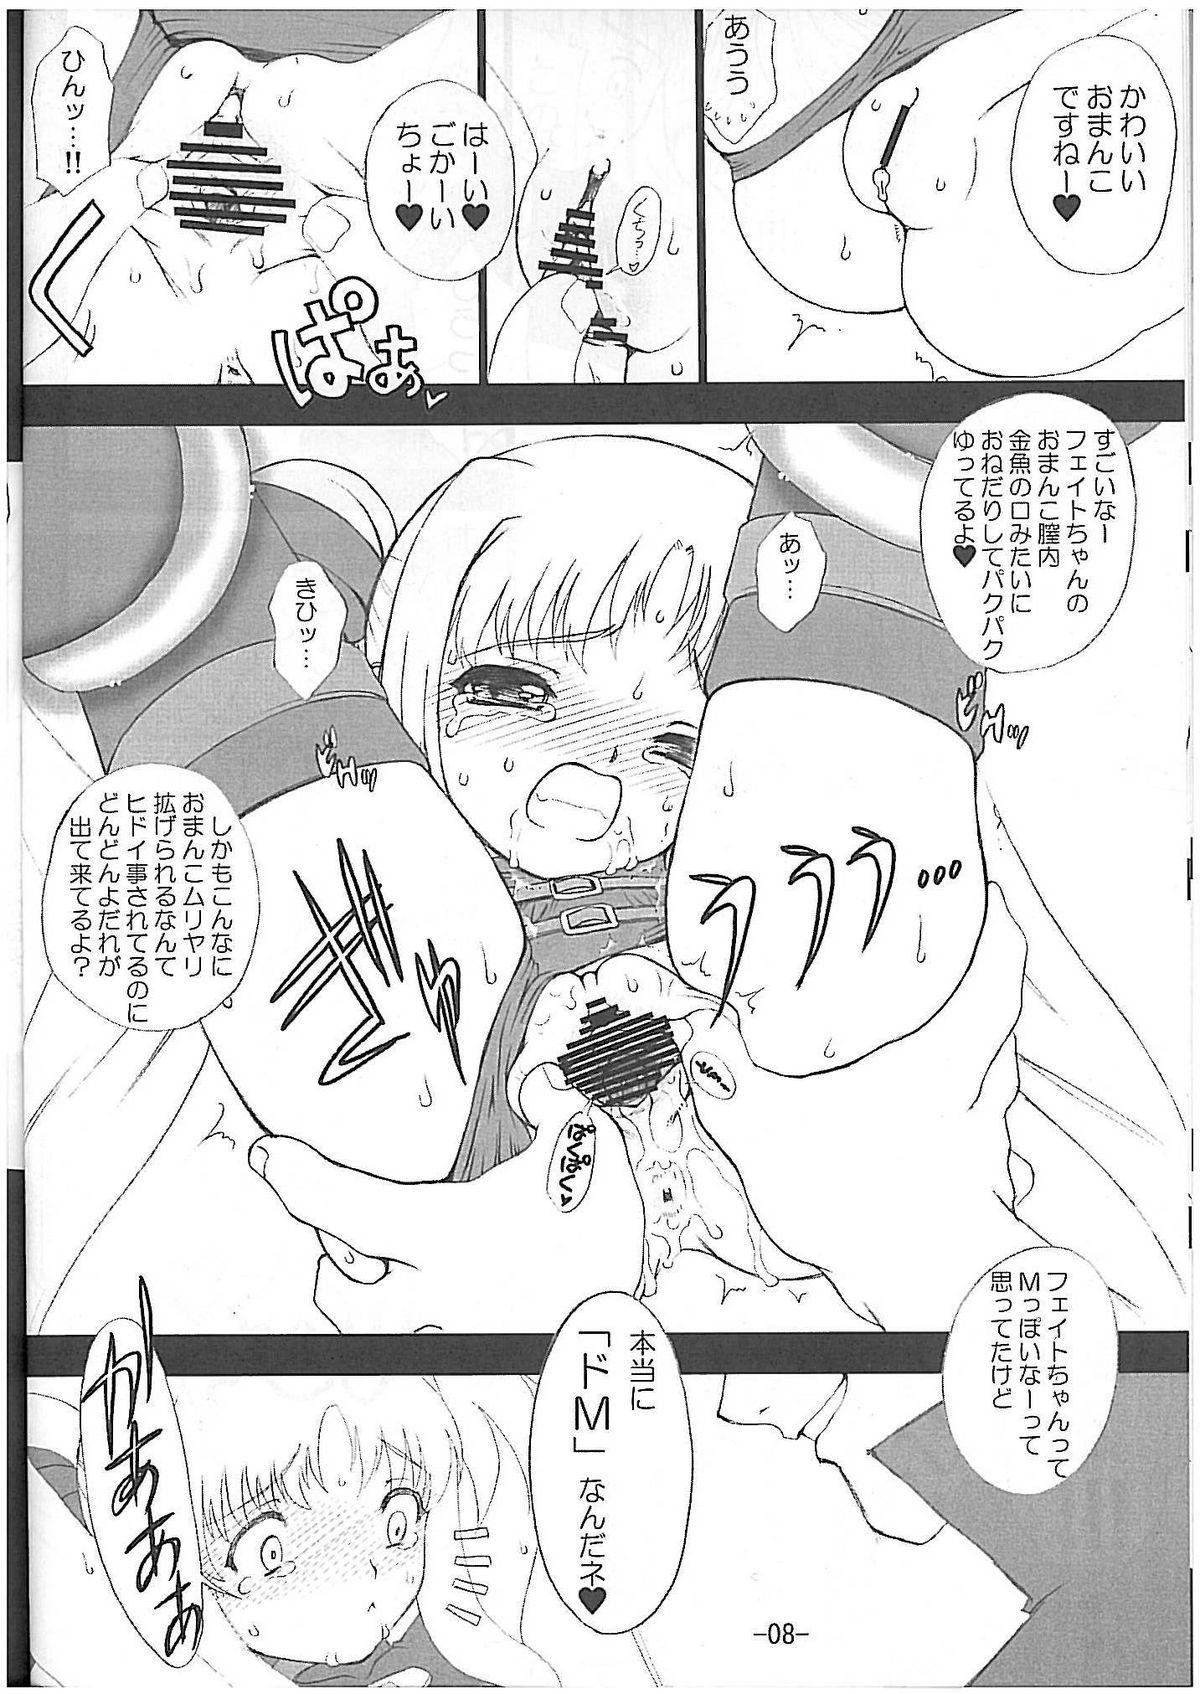 Buttfucking Onedari Fate-chan - Mahou shoujo lyrical nanoha Gayclips - Page 9